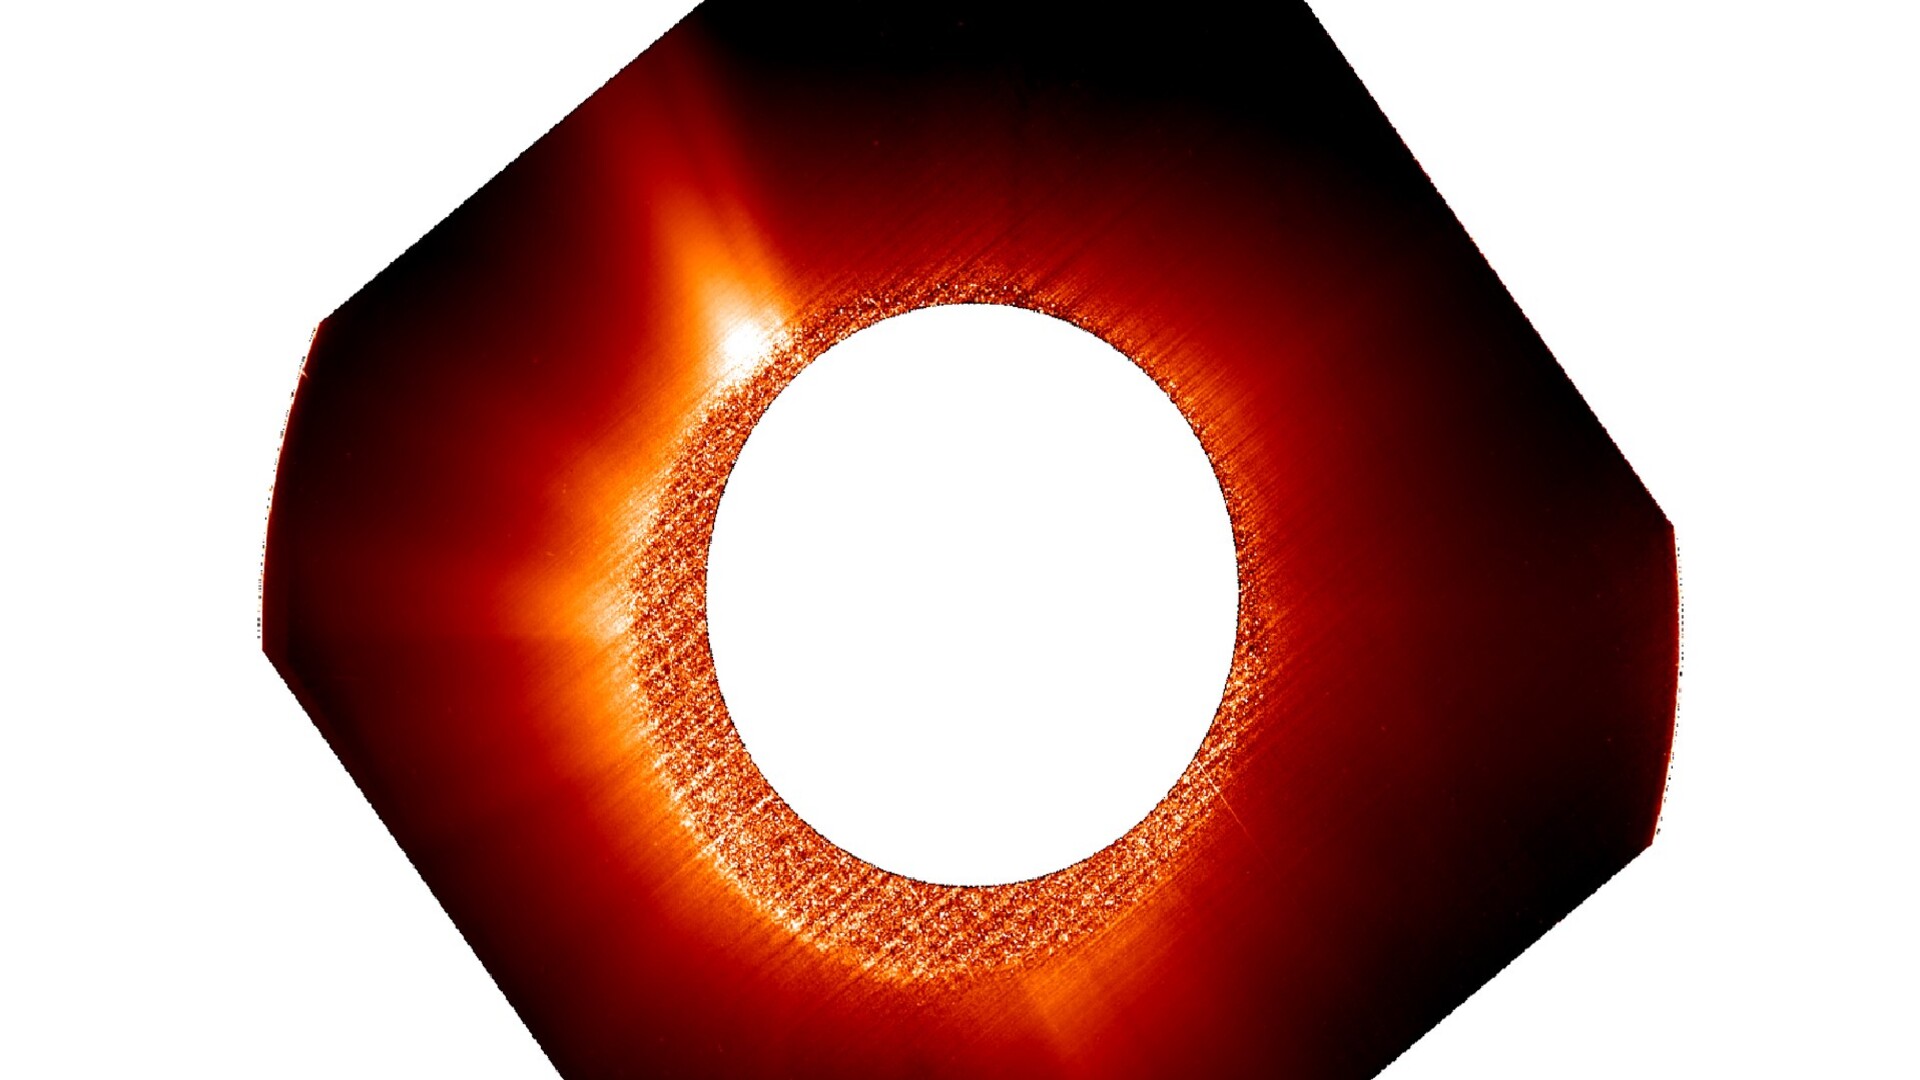 ASI - Solar Orbiter “danza” con Parker Solar Probe per scoprire insieme i segreti della corona solare